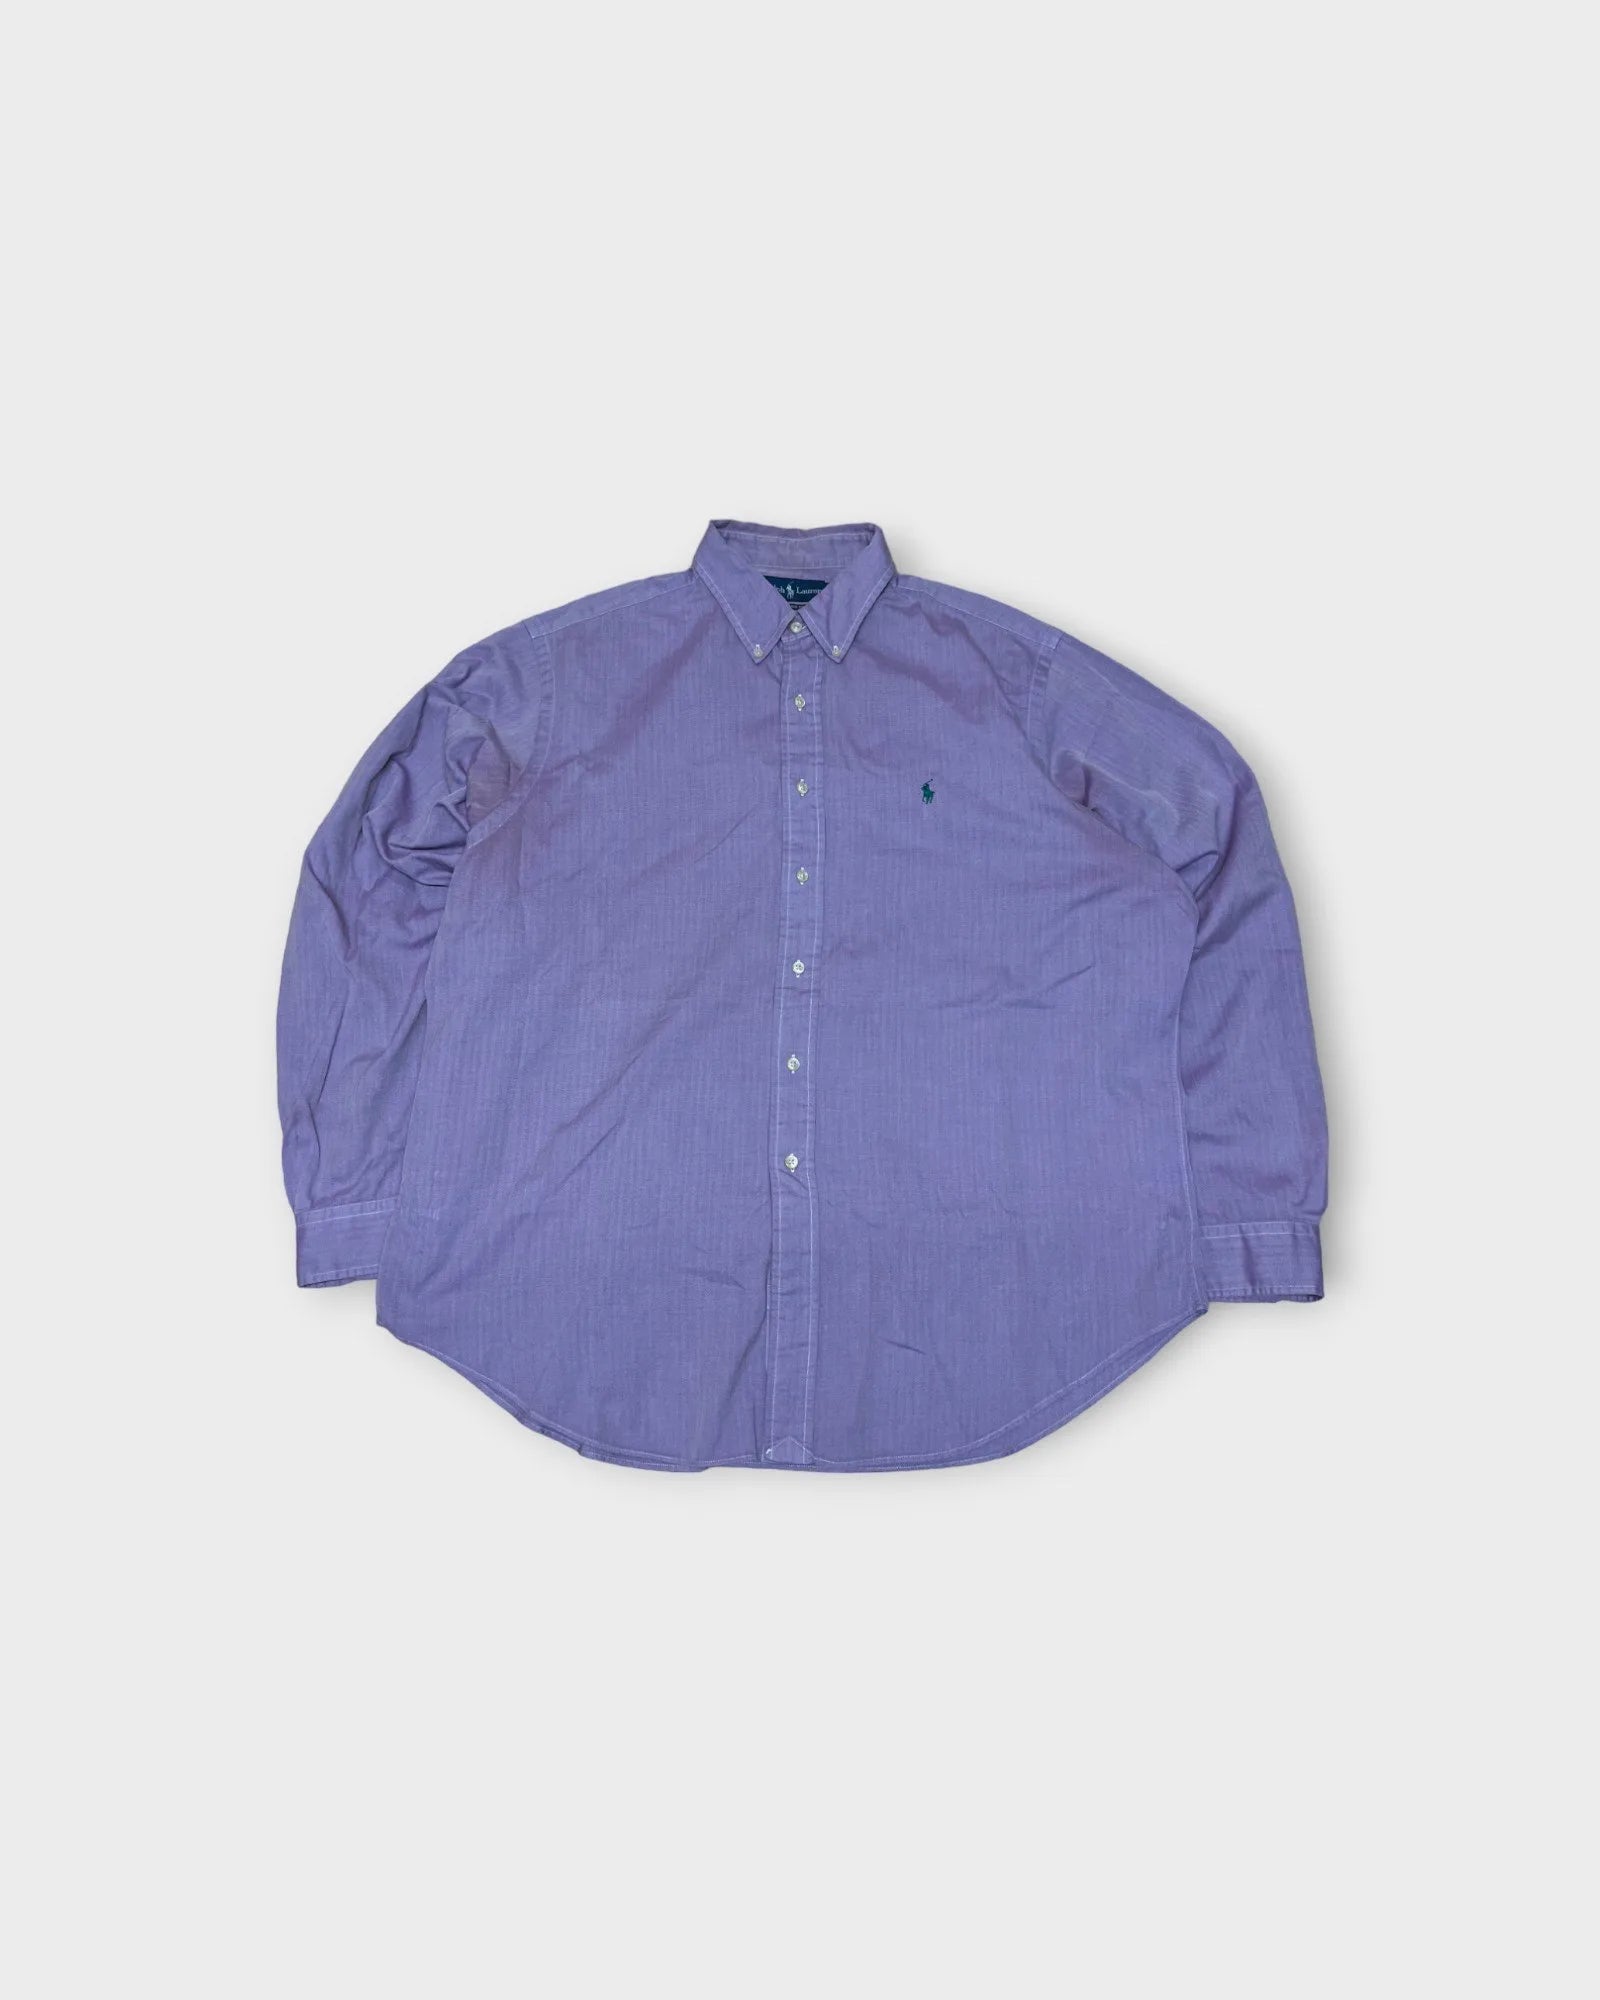 Vintage Ralph Lauren Shirt - XL